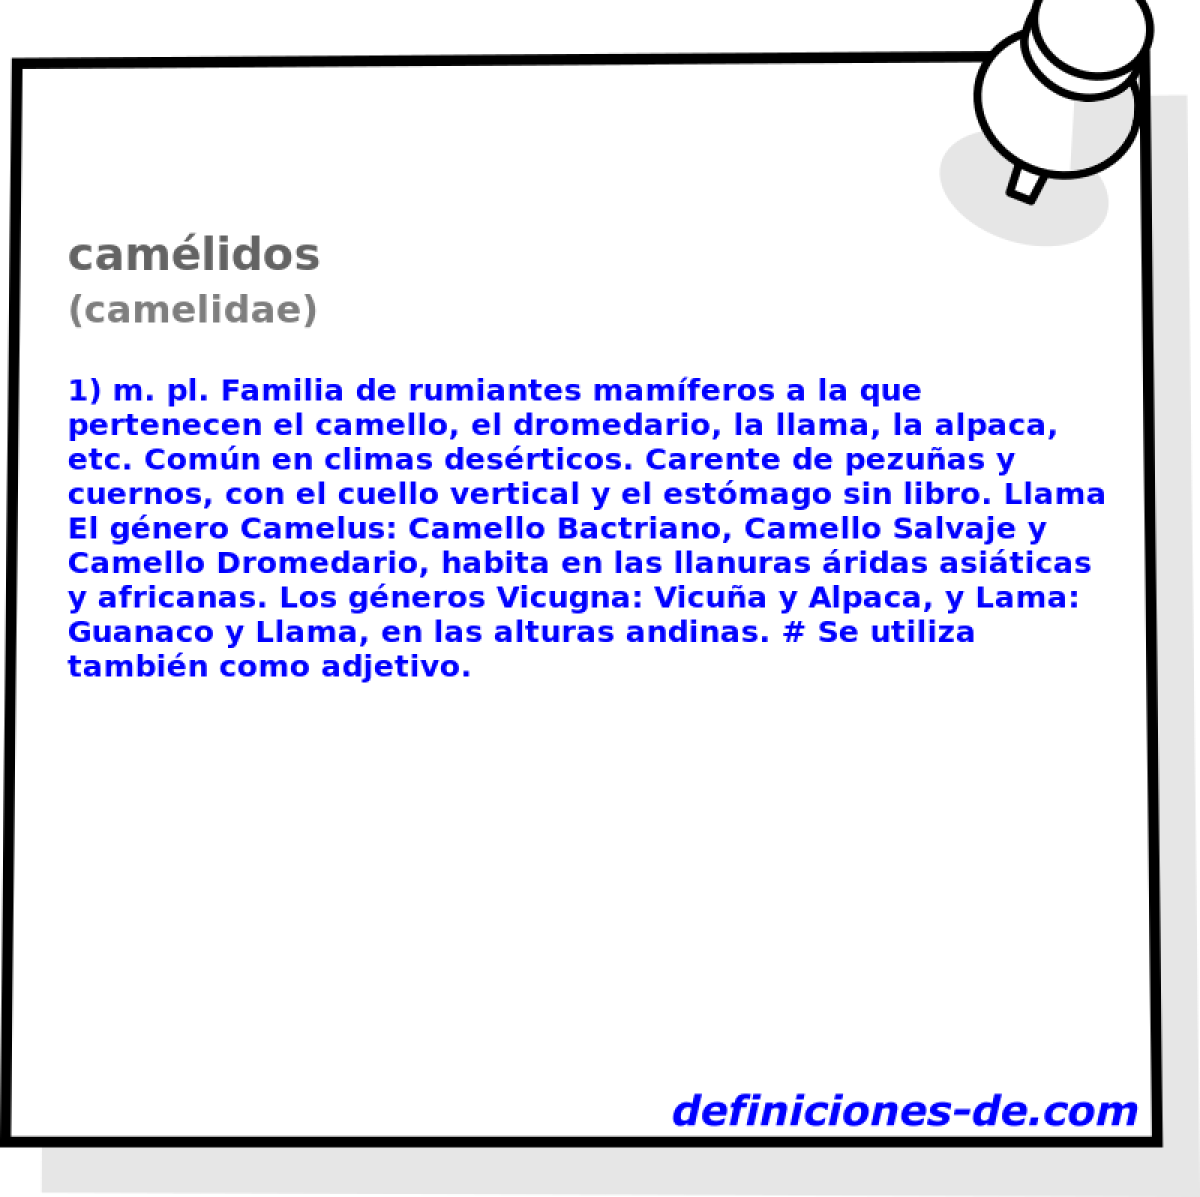 camlidos (camelidae)